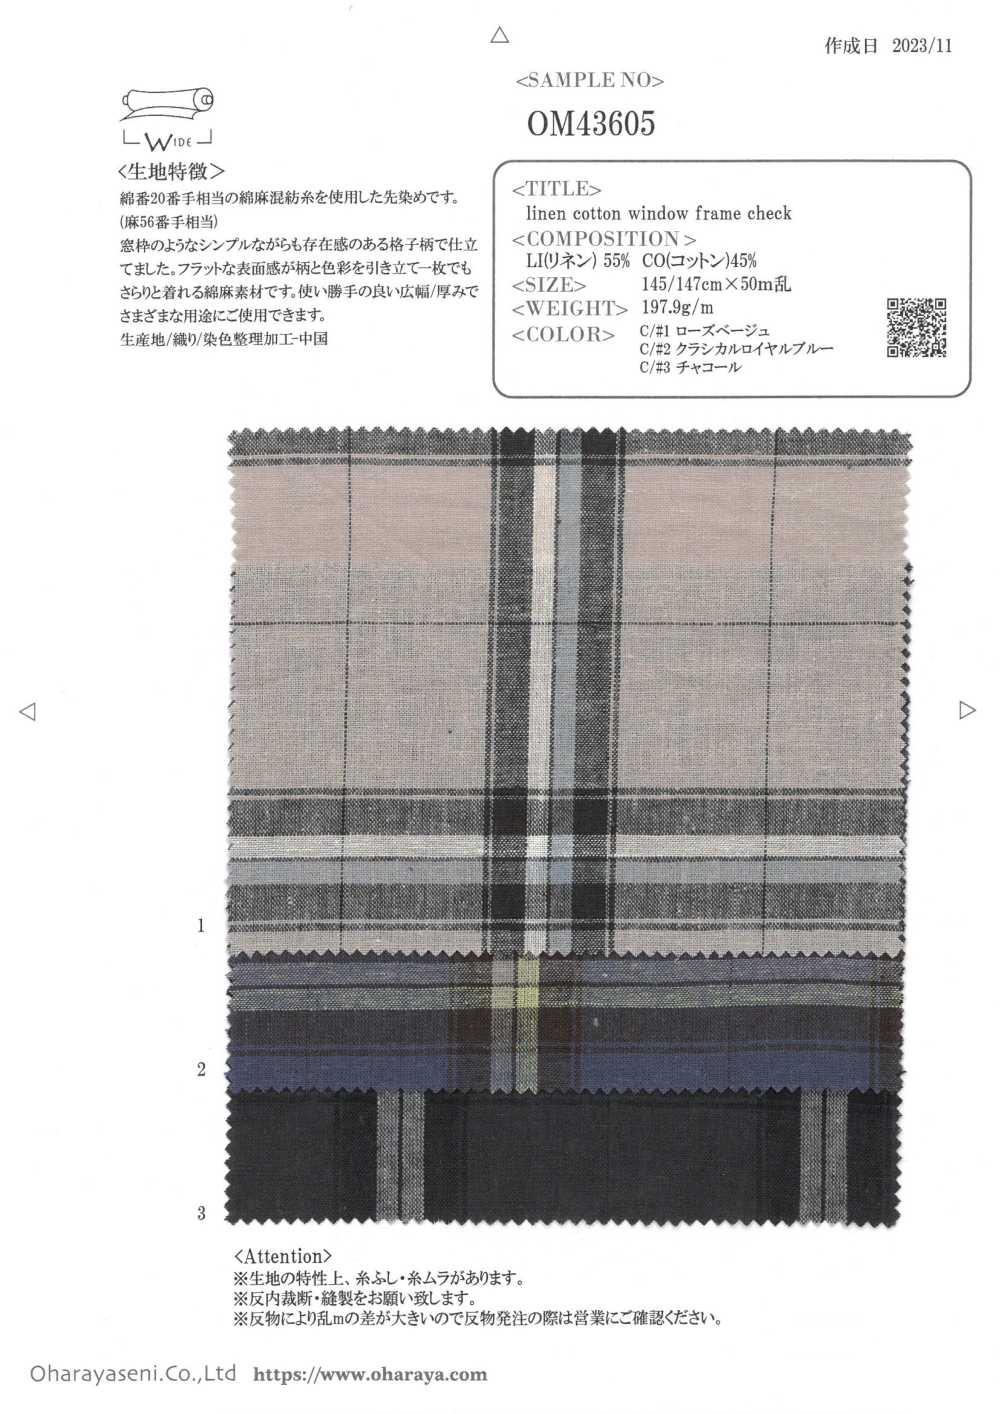 OM43605 linen cotton window frame check[生地] 小原屋繊維